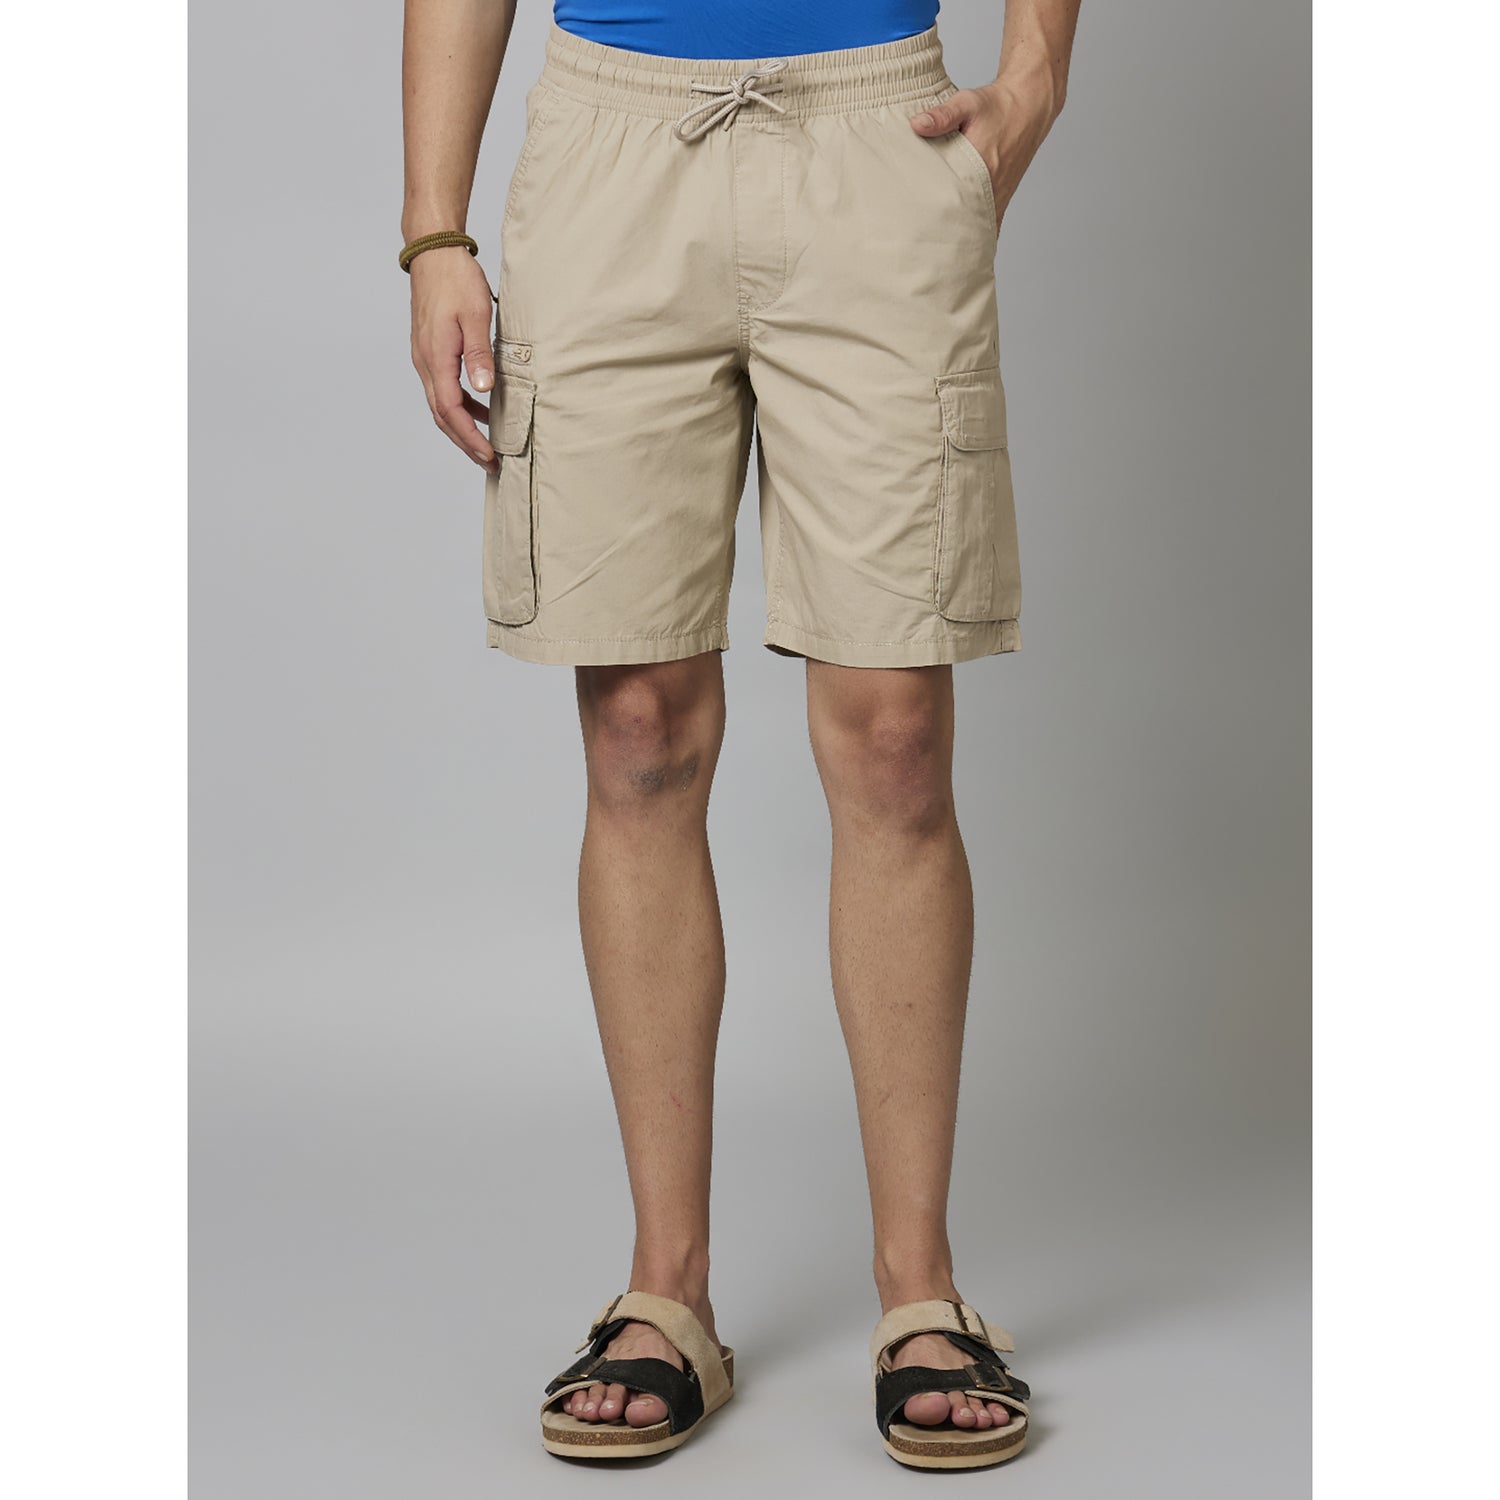 Tan Solid Cotton Shorts (FOSTOPBM)